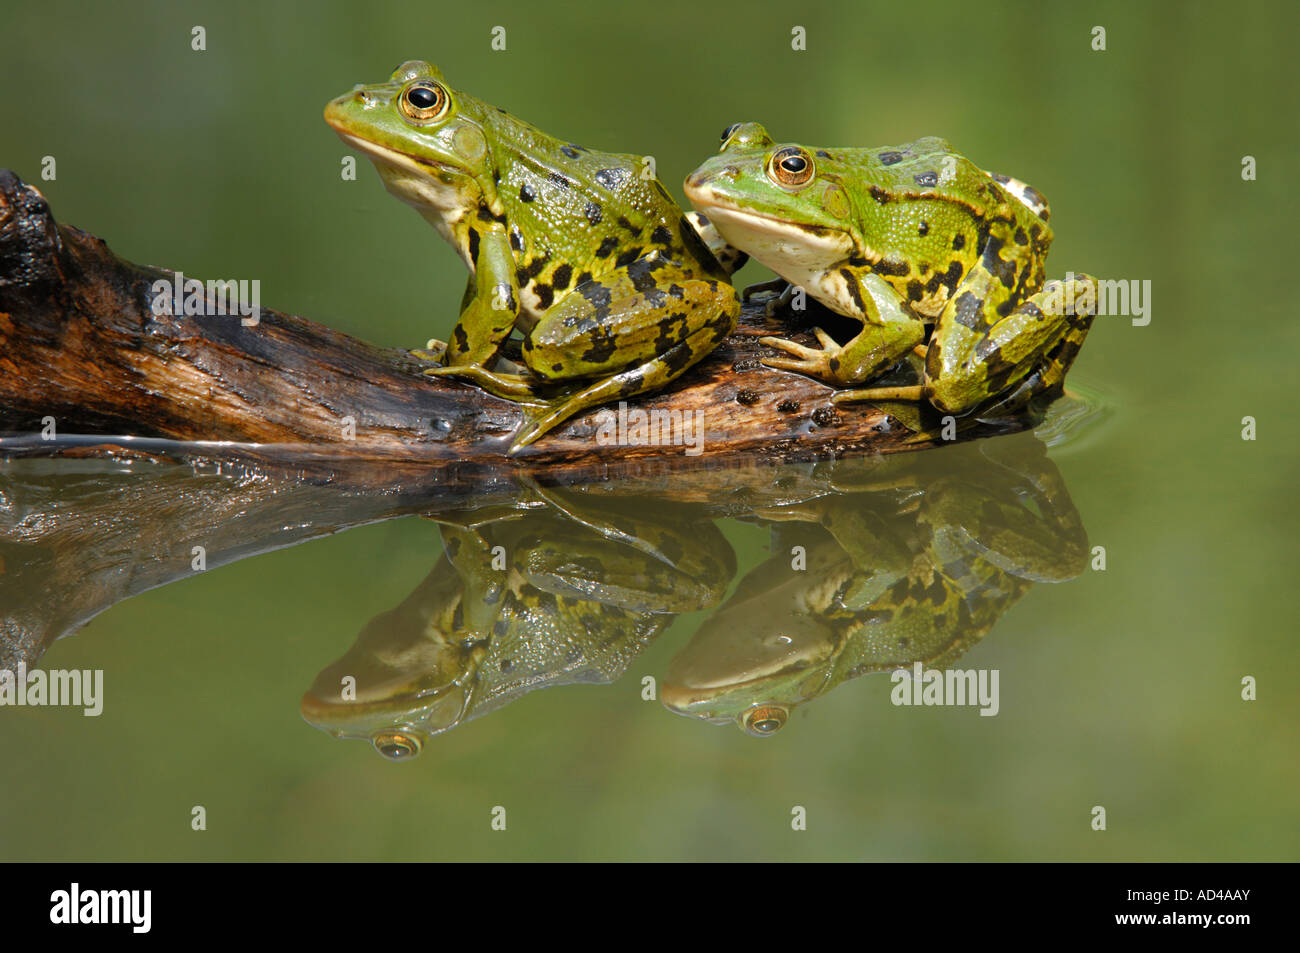 Edible frogs (Rana esculenta) with reflection Stock Photo